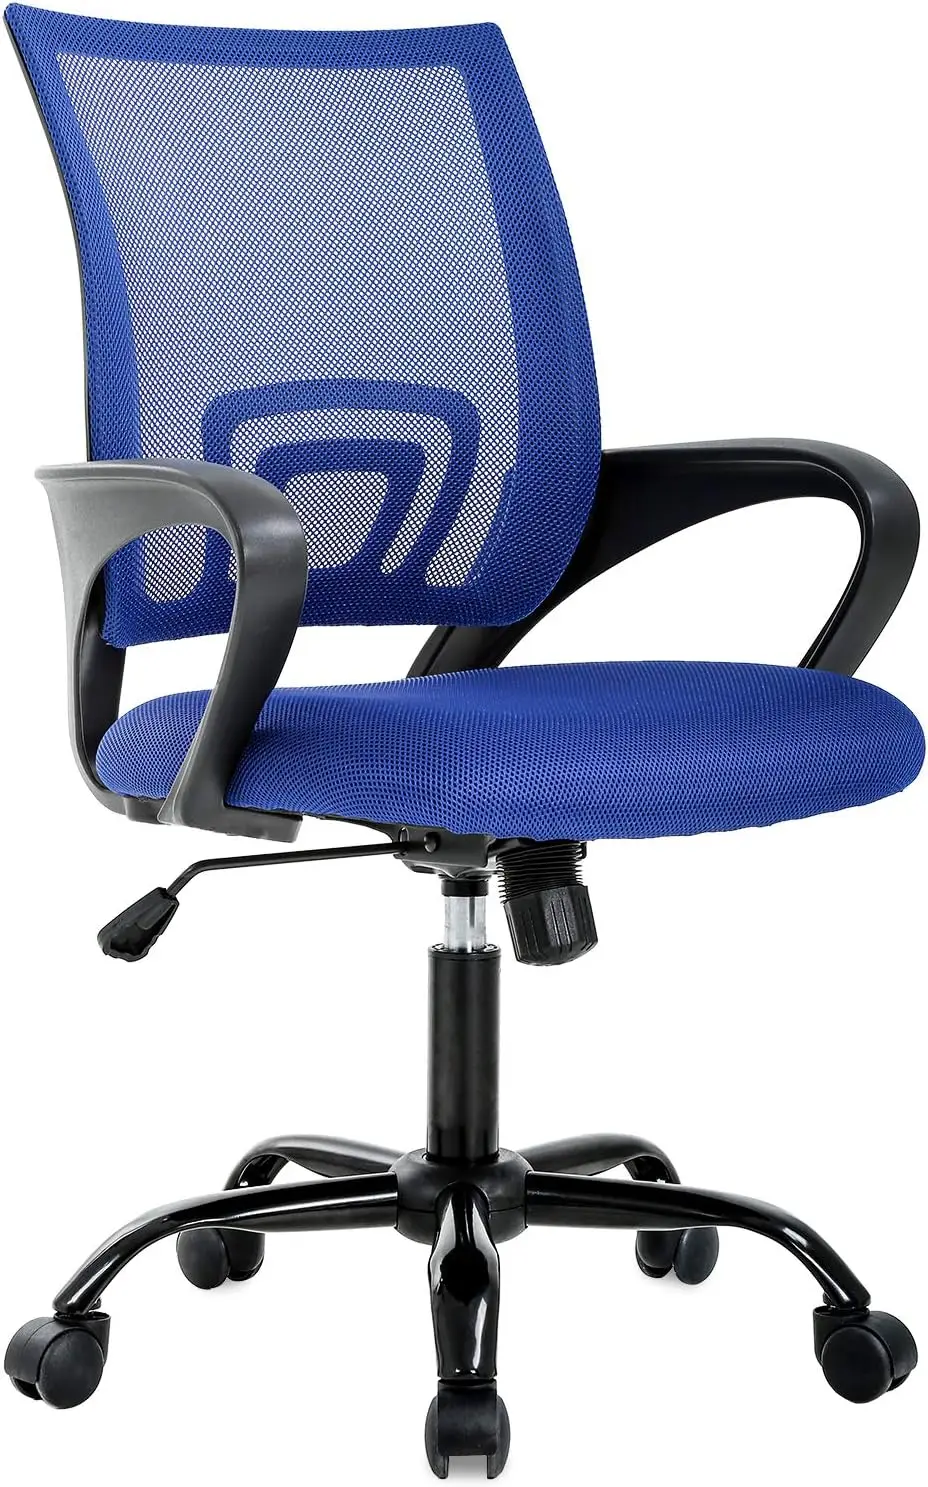 sedia-da-scrivania-ergonomica-economica-sedia-da-computer-in-rete-supporto-lombare-sgabello-regolabile-direzionale-moderno-sedia-girevole-girevole-blu